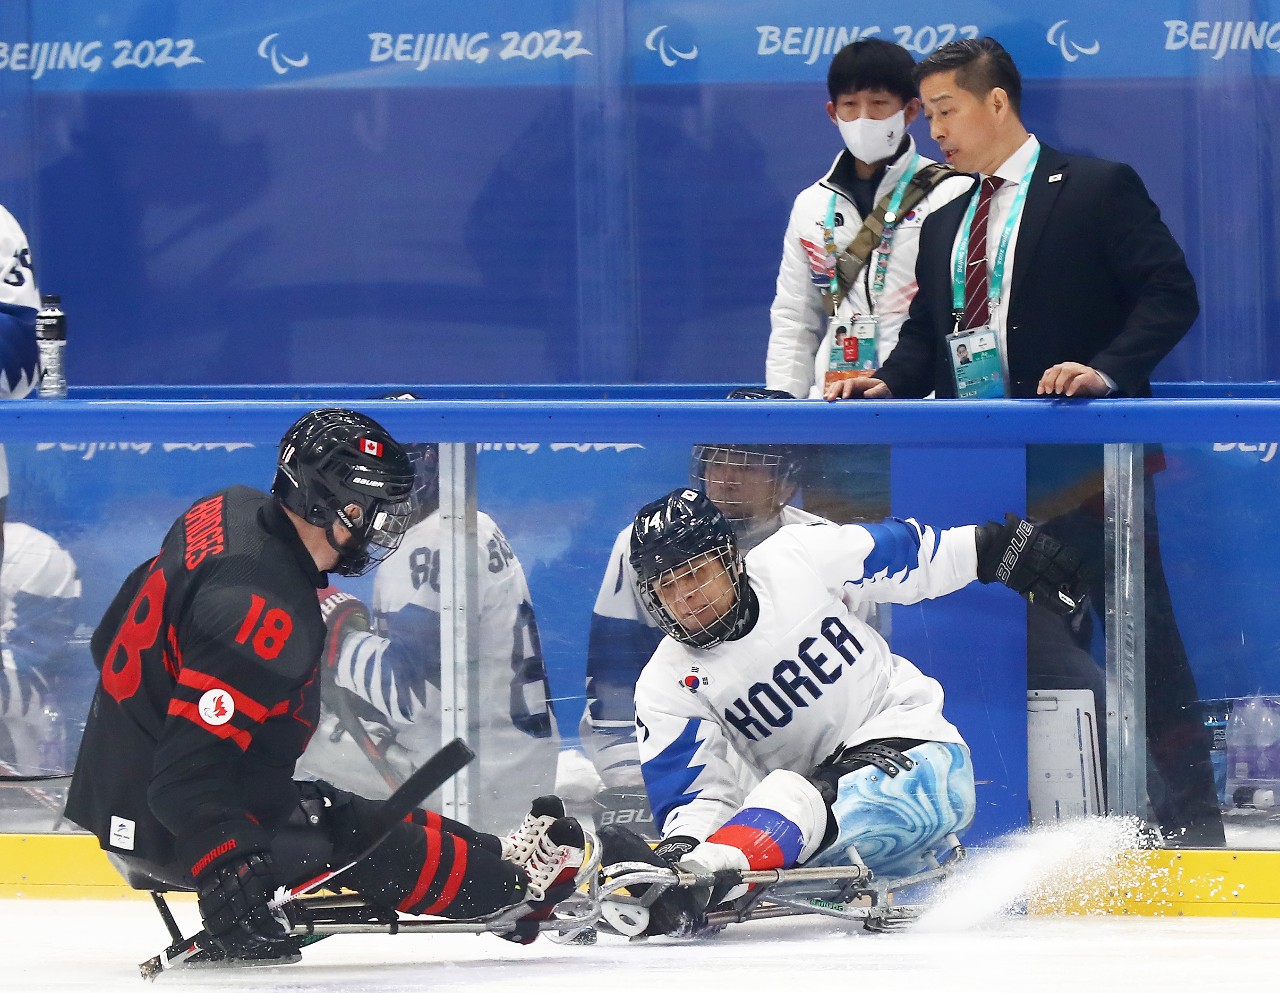 대한민국 장애인 아이스하키 대표팀이 8일 중국 베이징 국립실내경기장에서 열린 캐나다와 2022 베이징동계패럴림픽 A조 조별리그 2차전에서 캐나다와 대결하고 있다. 대한장애인체육회 제공